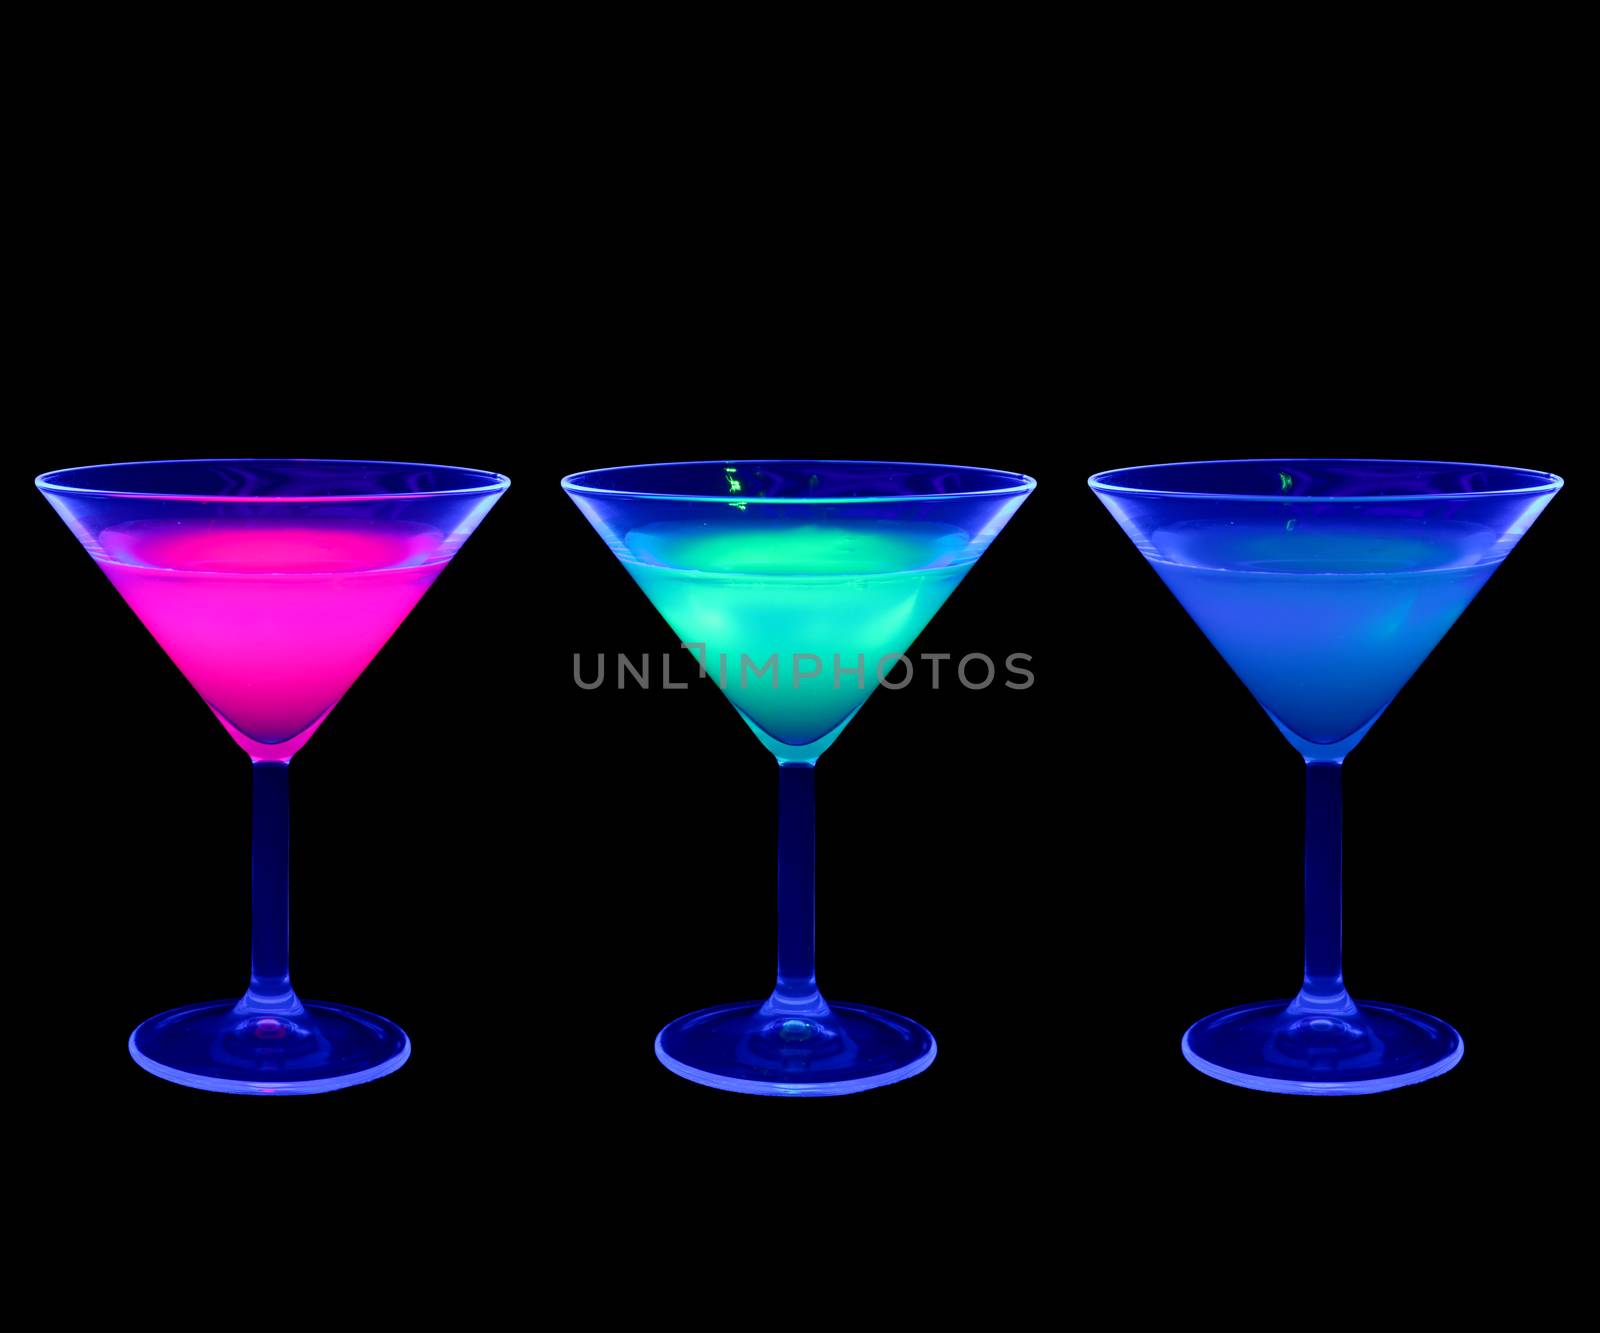 Cocktails by Aarstudio